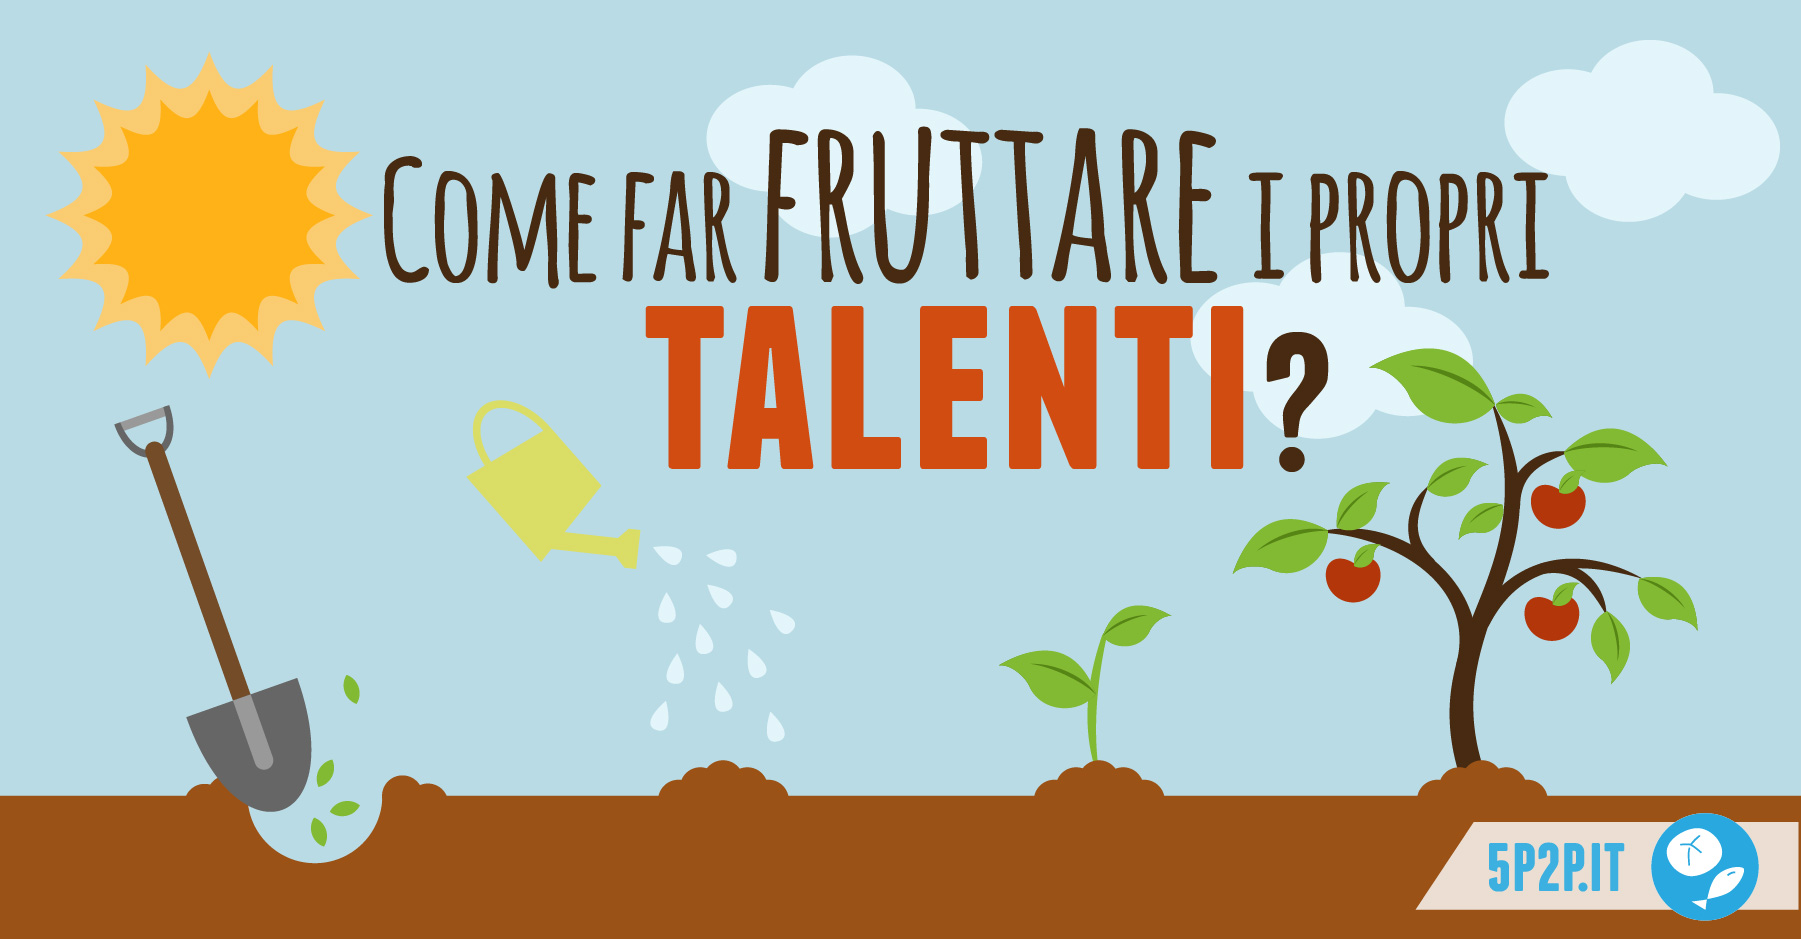 Come far fruttare i propri talenti?